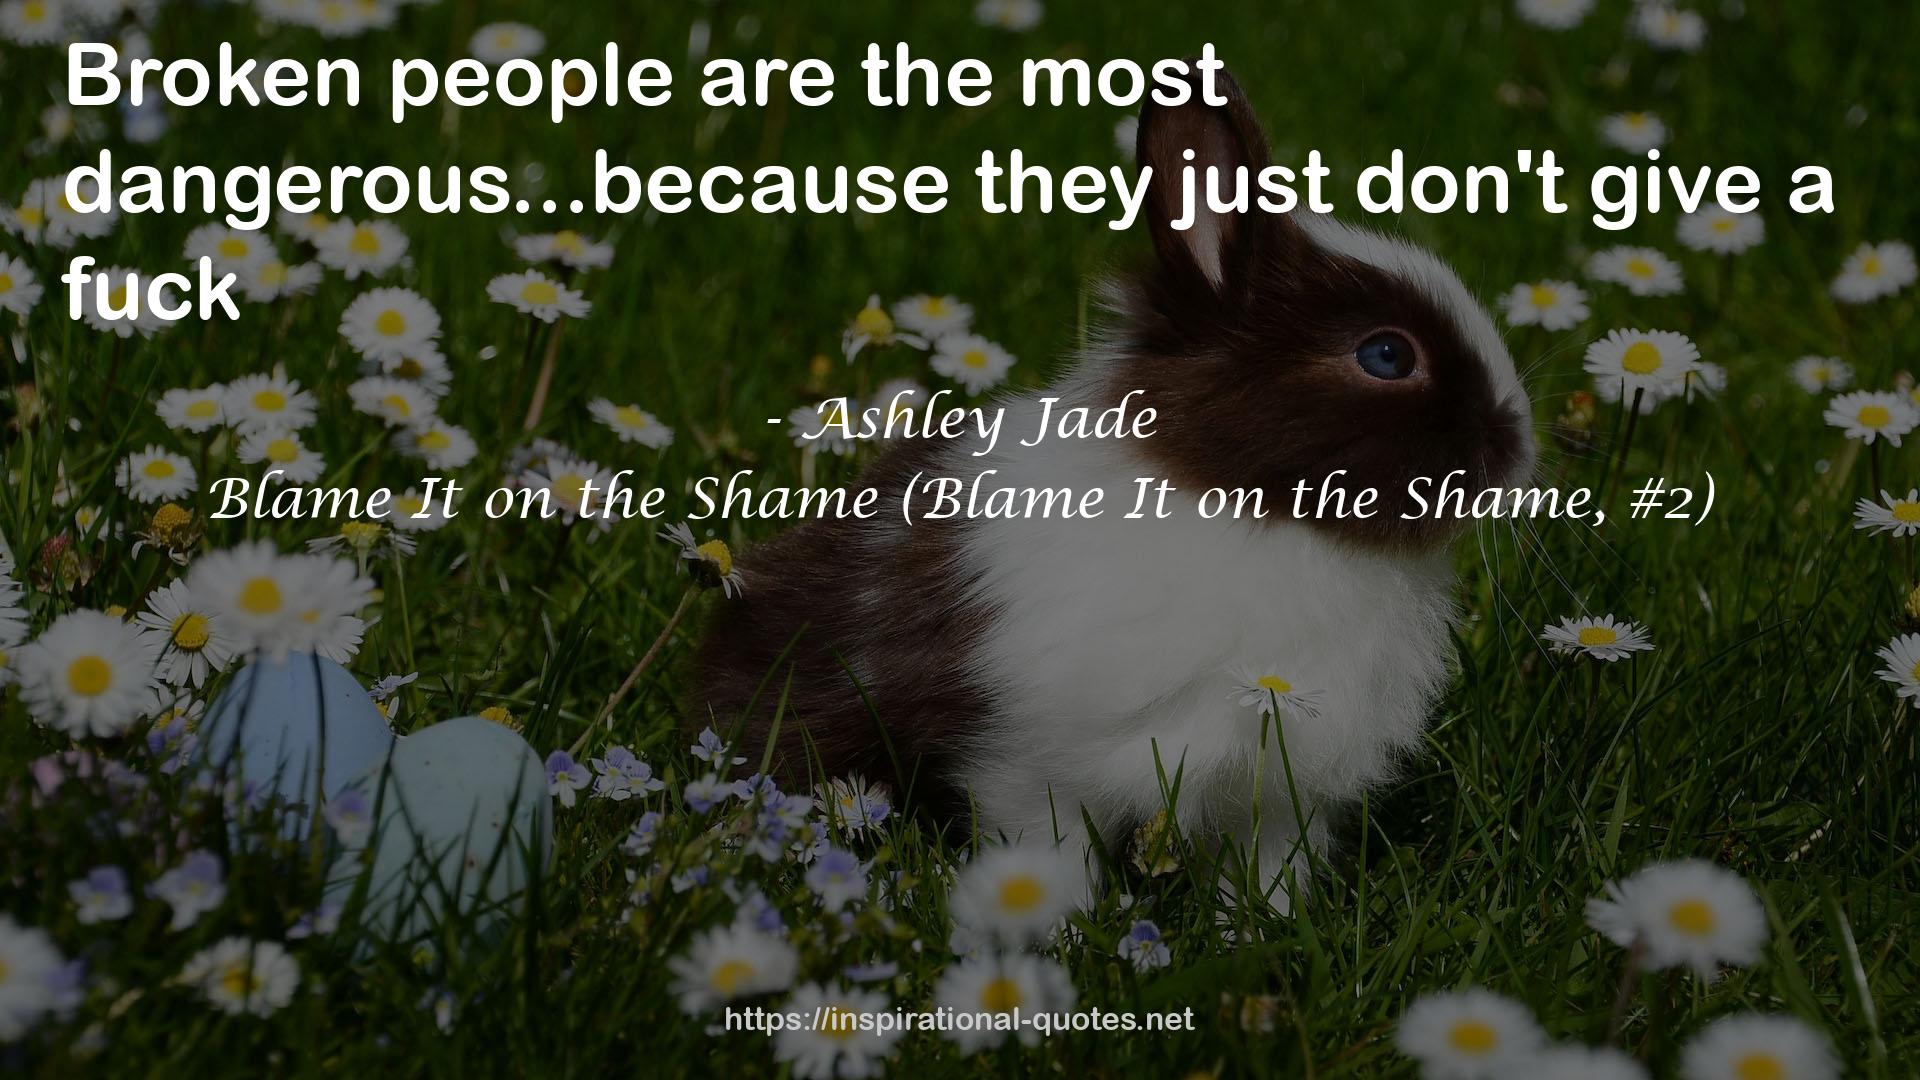 Blame It on the Shame (Blame It on the Shame, #2) QUOTES